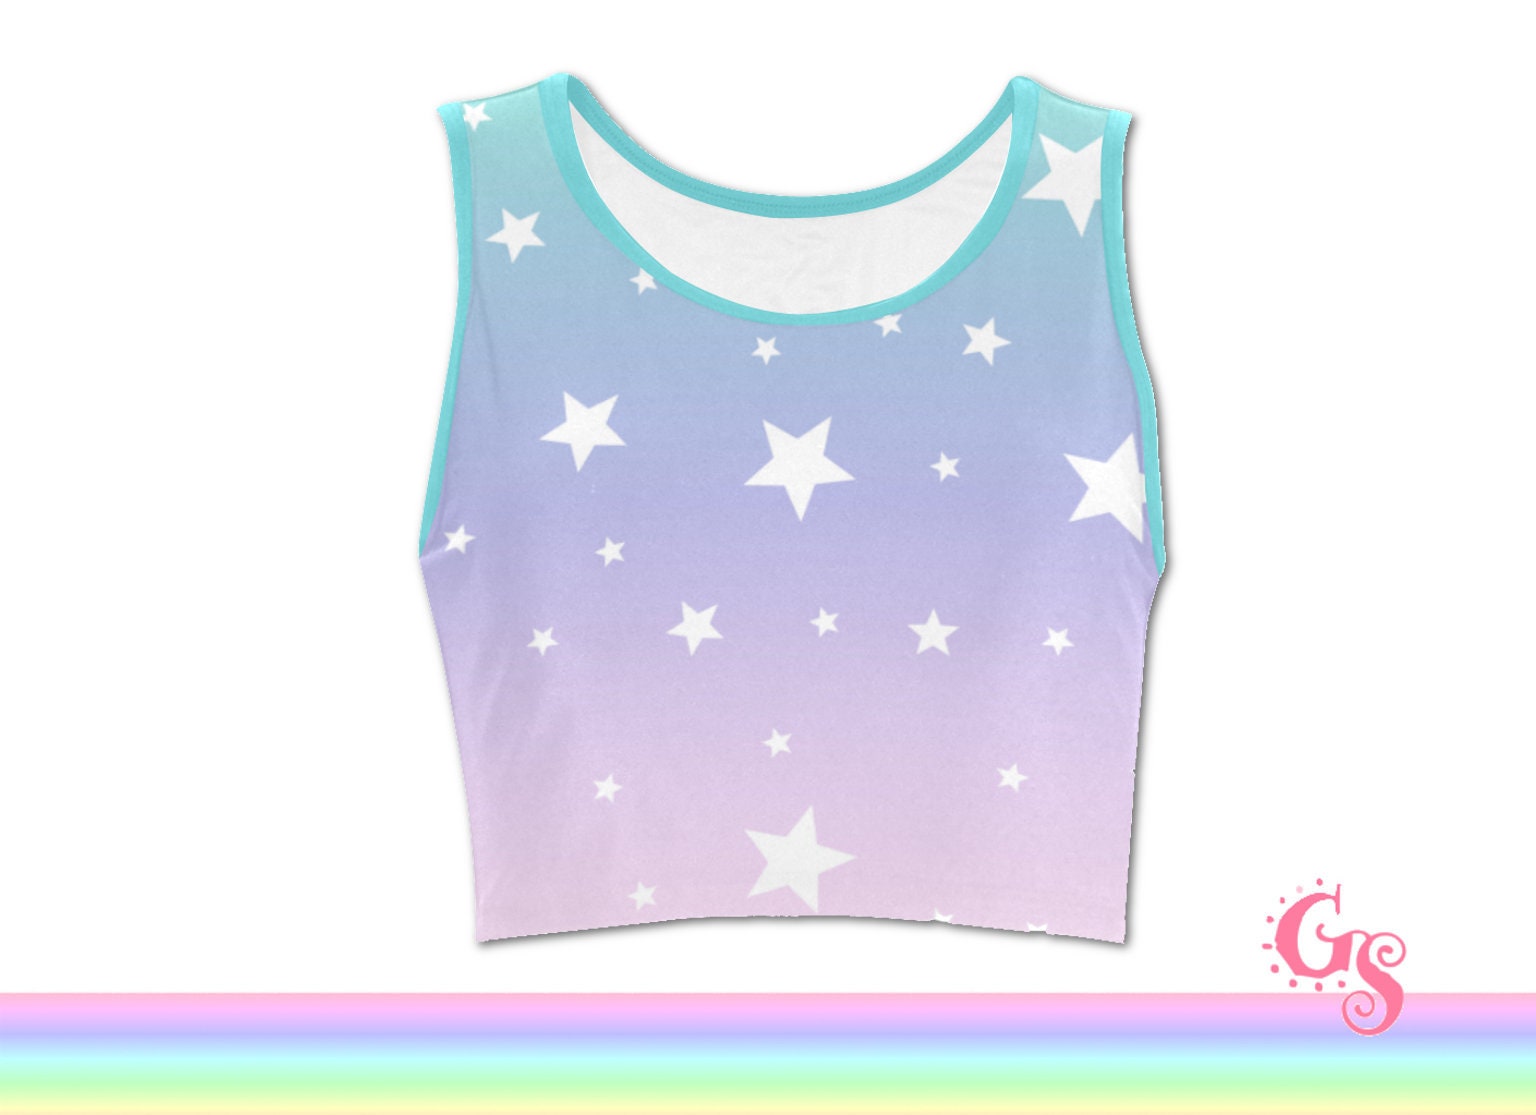 Regenbogen Top Bauchfrei Shirt I Pastel Goth Farbverlauf Print Galaxy Sterne Mädchen Damen Sommer Kleidung von girlSSpell